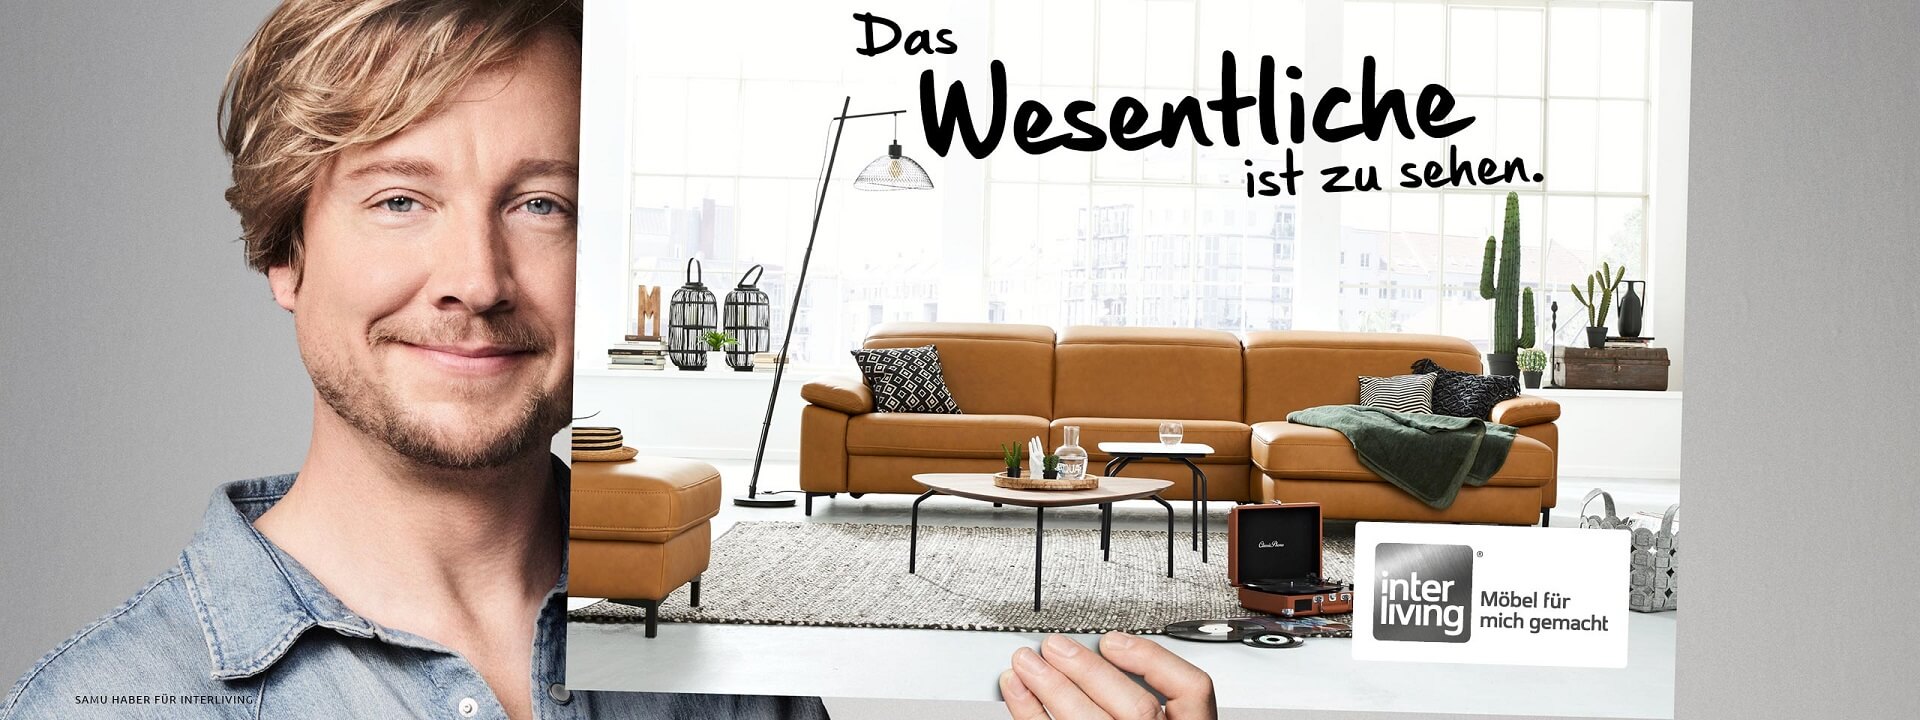 Werbemotiv mit Samu Haber, der ein große bild, darauf ist ein Sofa abgebildet und der Spruch: "Das Wesentliche ist zu sehen".